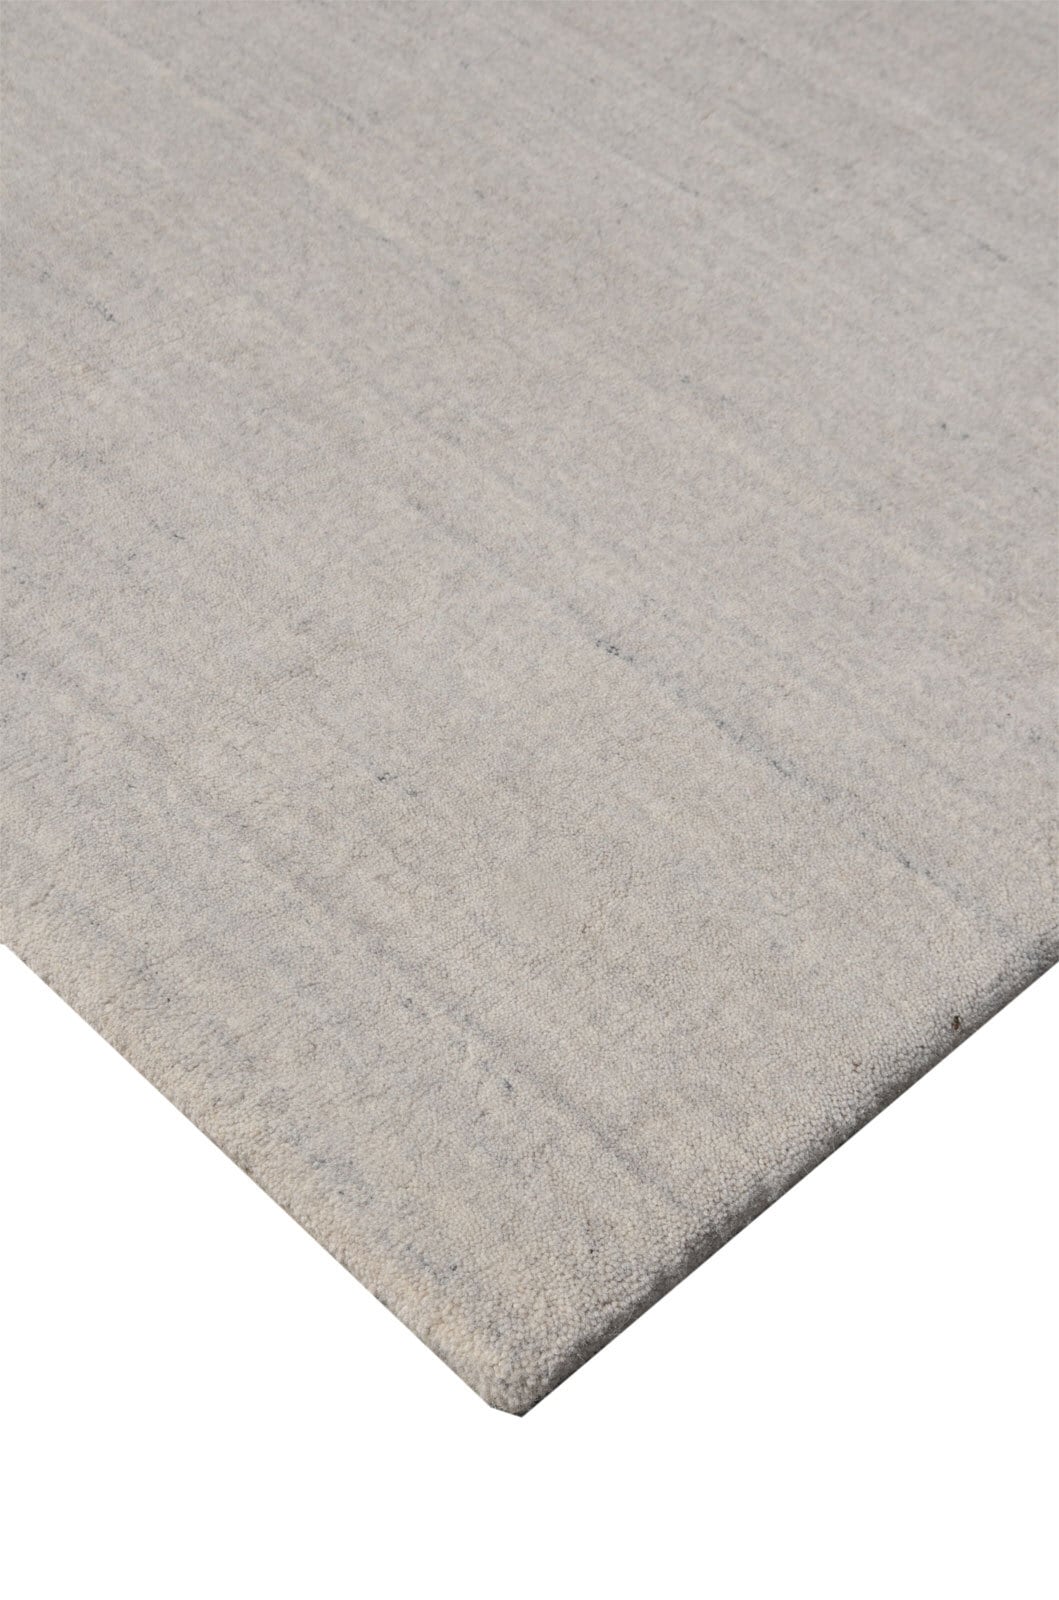 Berber-Teppich ATLAS 90 x 160 cm grau meliert 